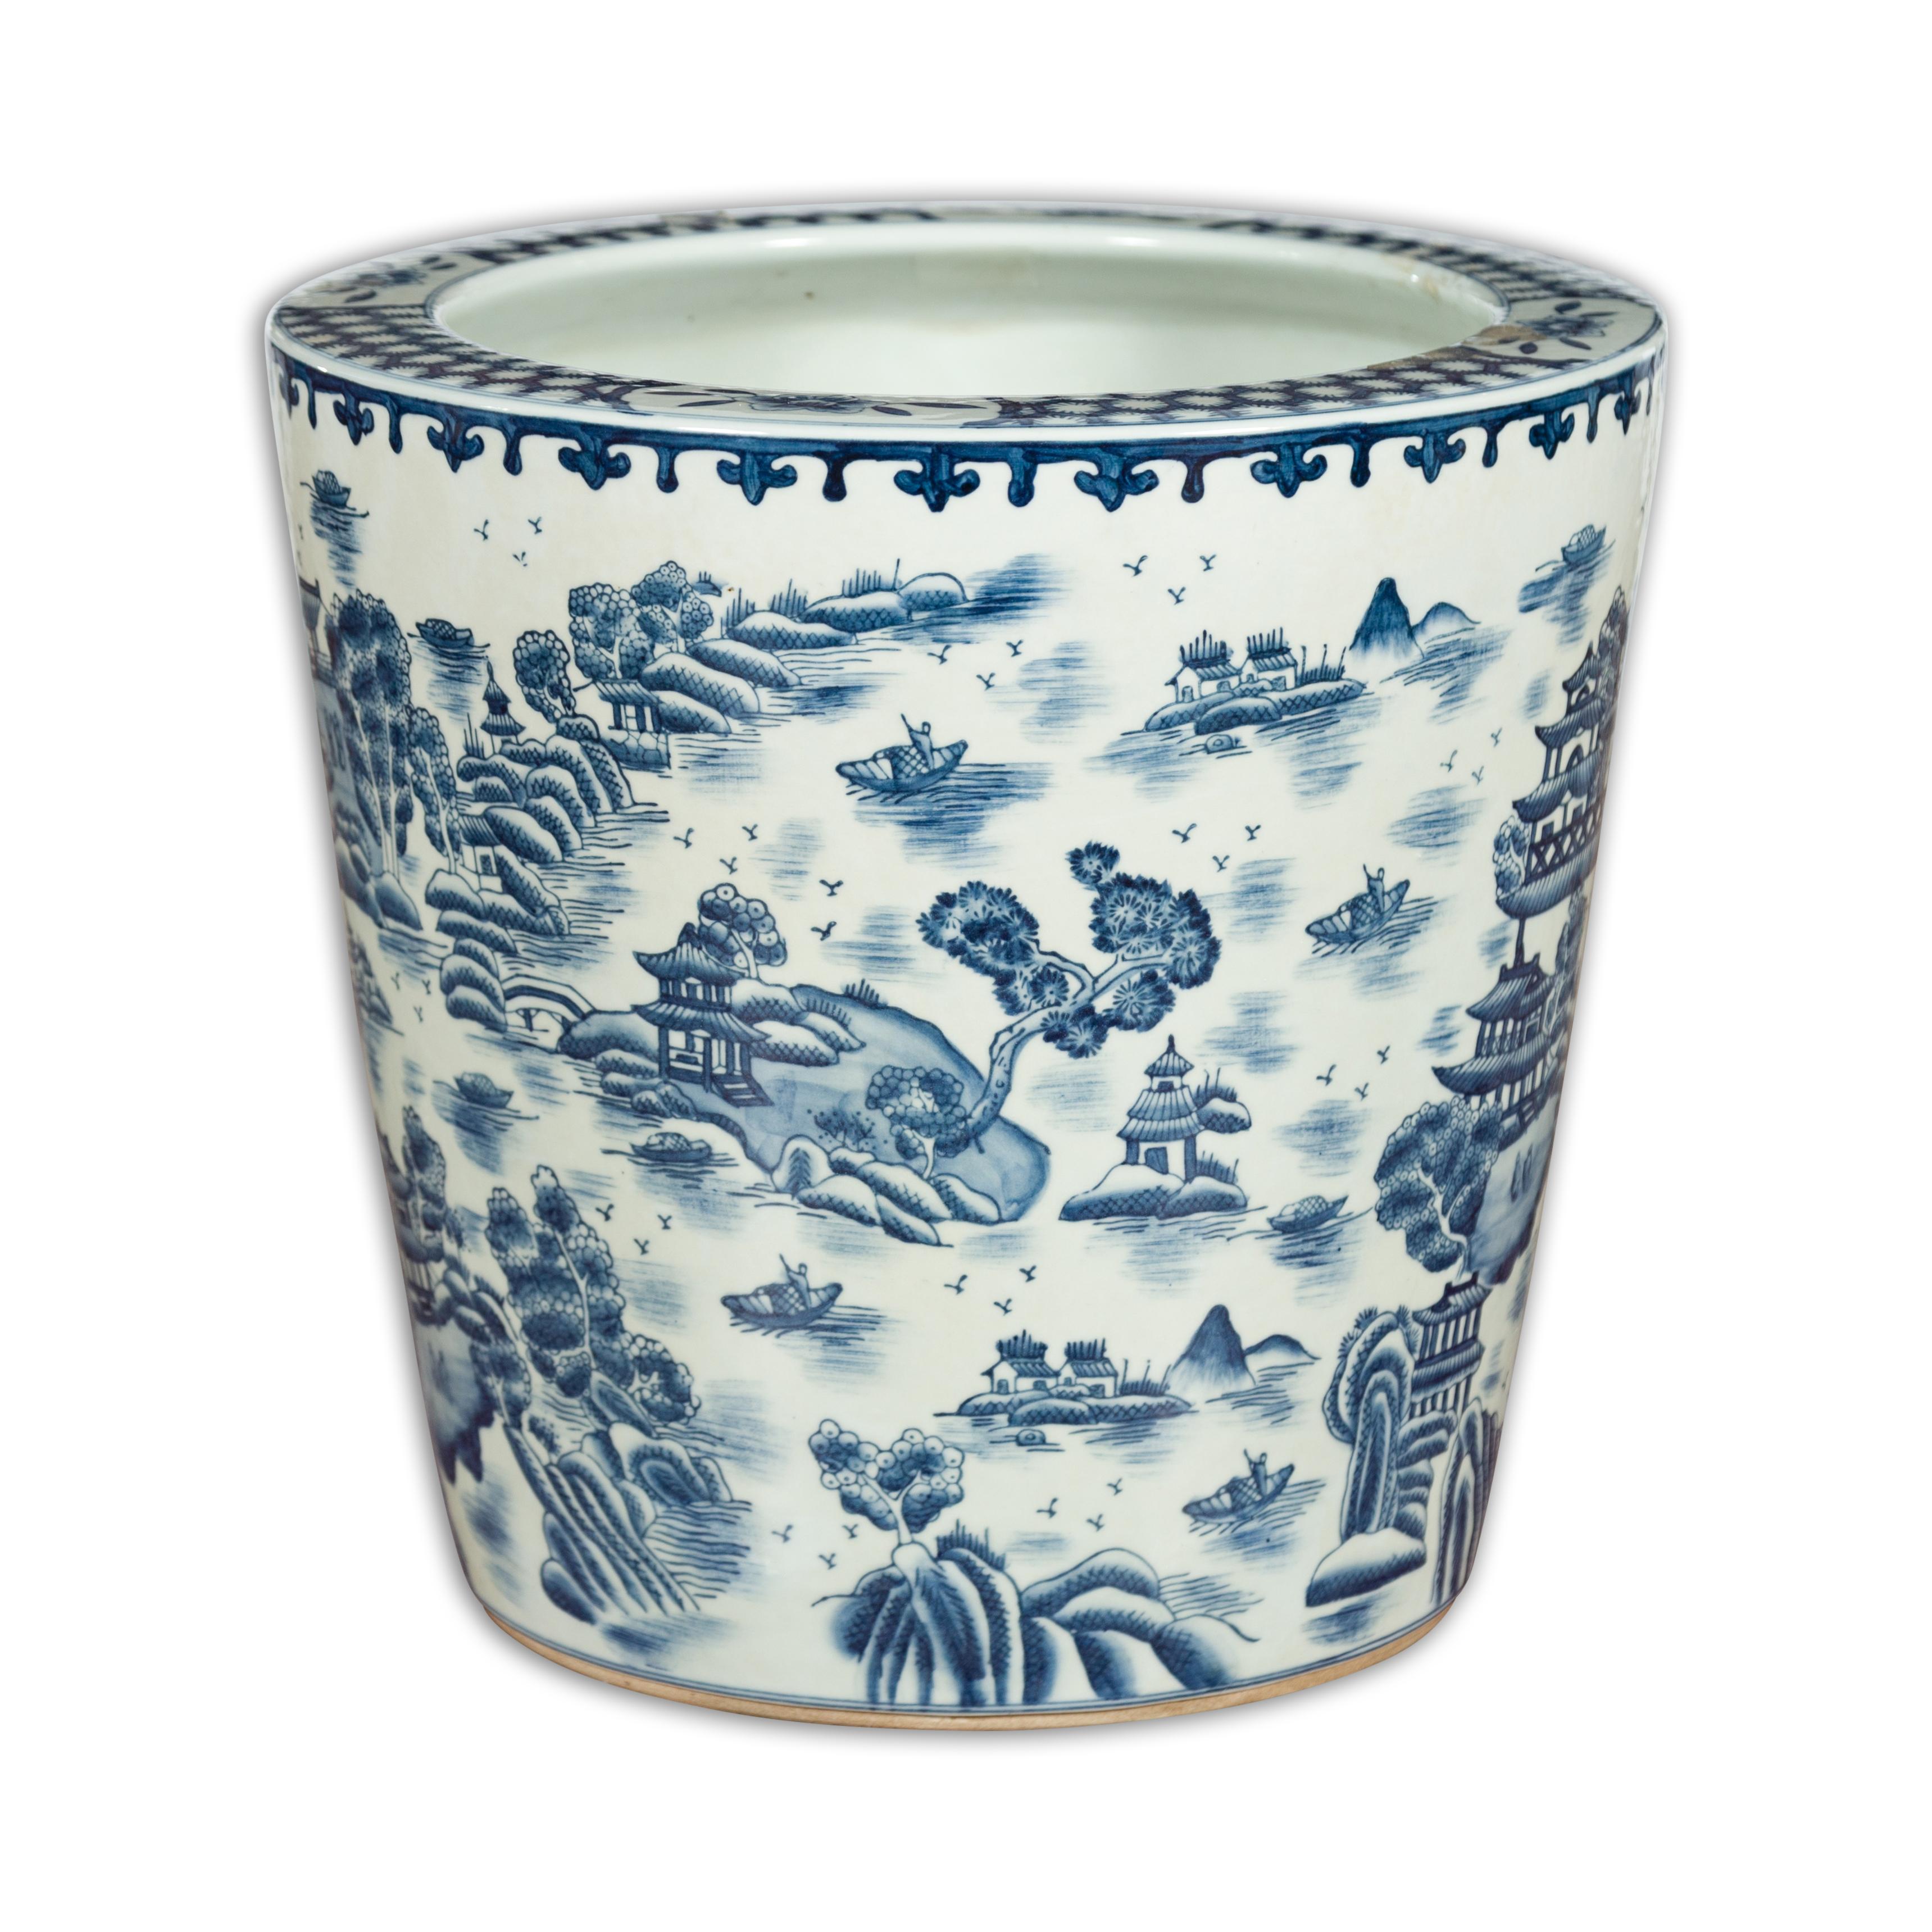 Vintage Porcelain Cache-Pot Planter with Blue and White Mountainous Landscape For Sale 8